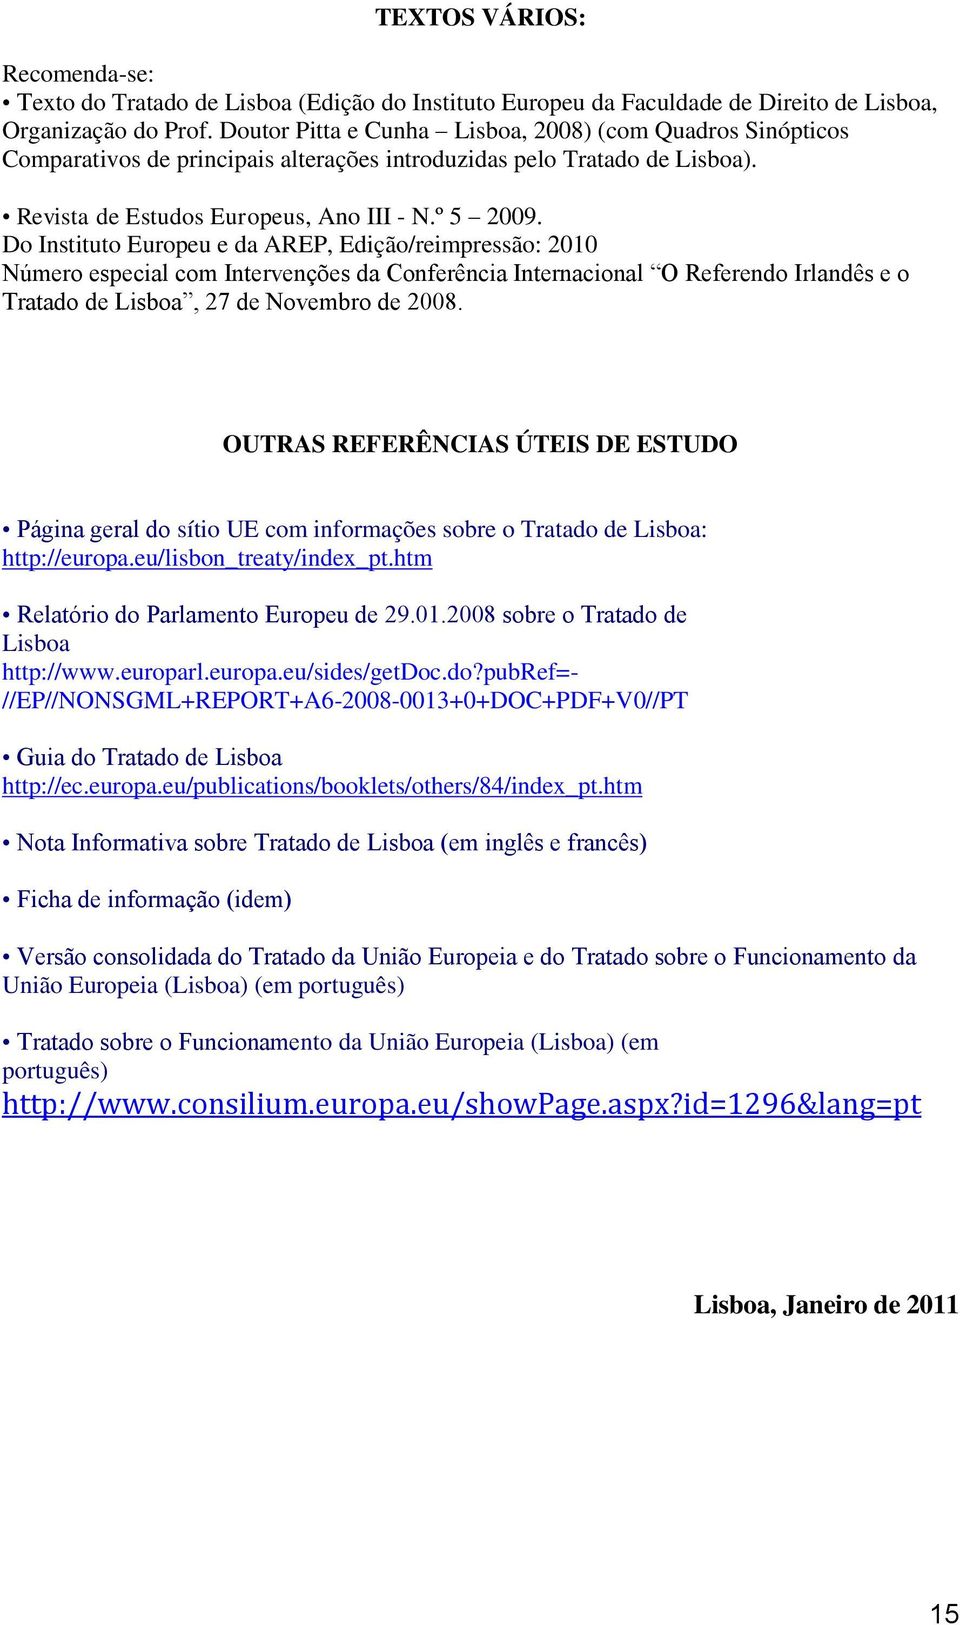 Do Instituto Europeu e da AREP, Edição/reimpressão: 2010 Número especial com Intervenções da Conferência Internacional O Referendo Irlandês e o Tratado de Lisboa, 27 de Novembro de 2008.